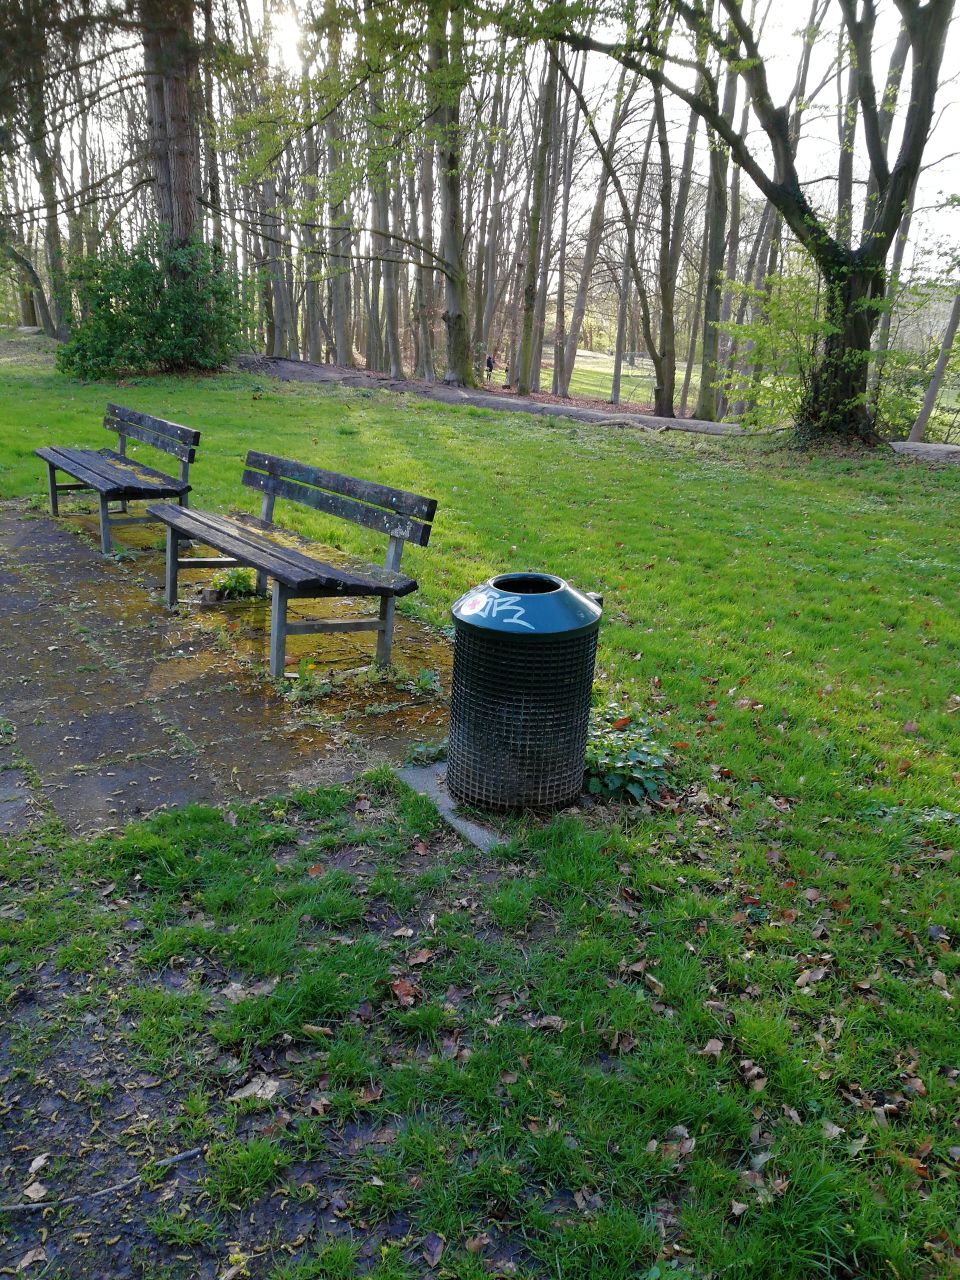 Rasenfläche, auf der zwei Bänke und ein Mülleimer stehen. Im Hintergrund stehen Bäume.